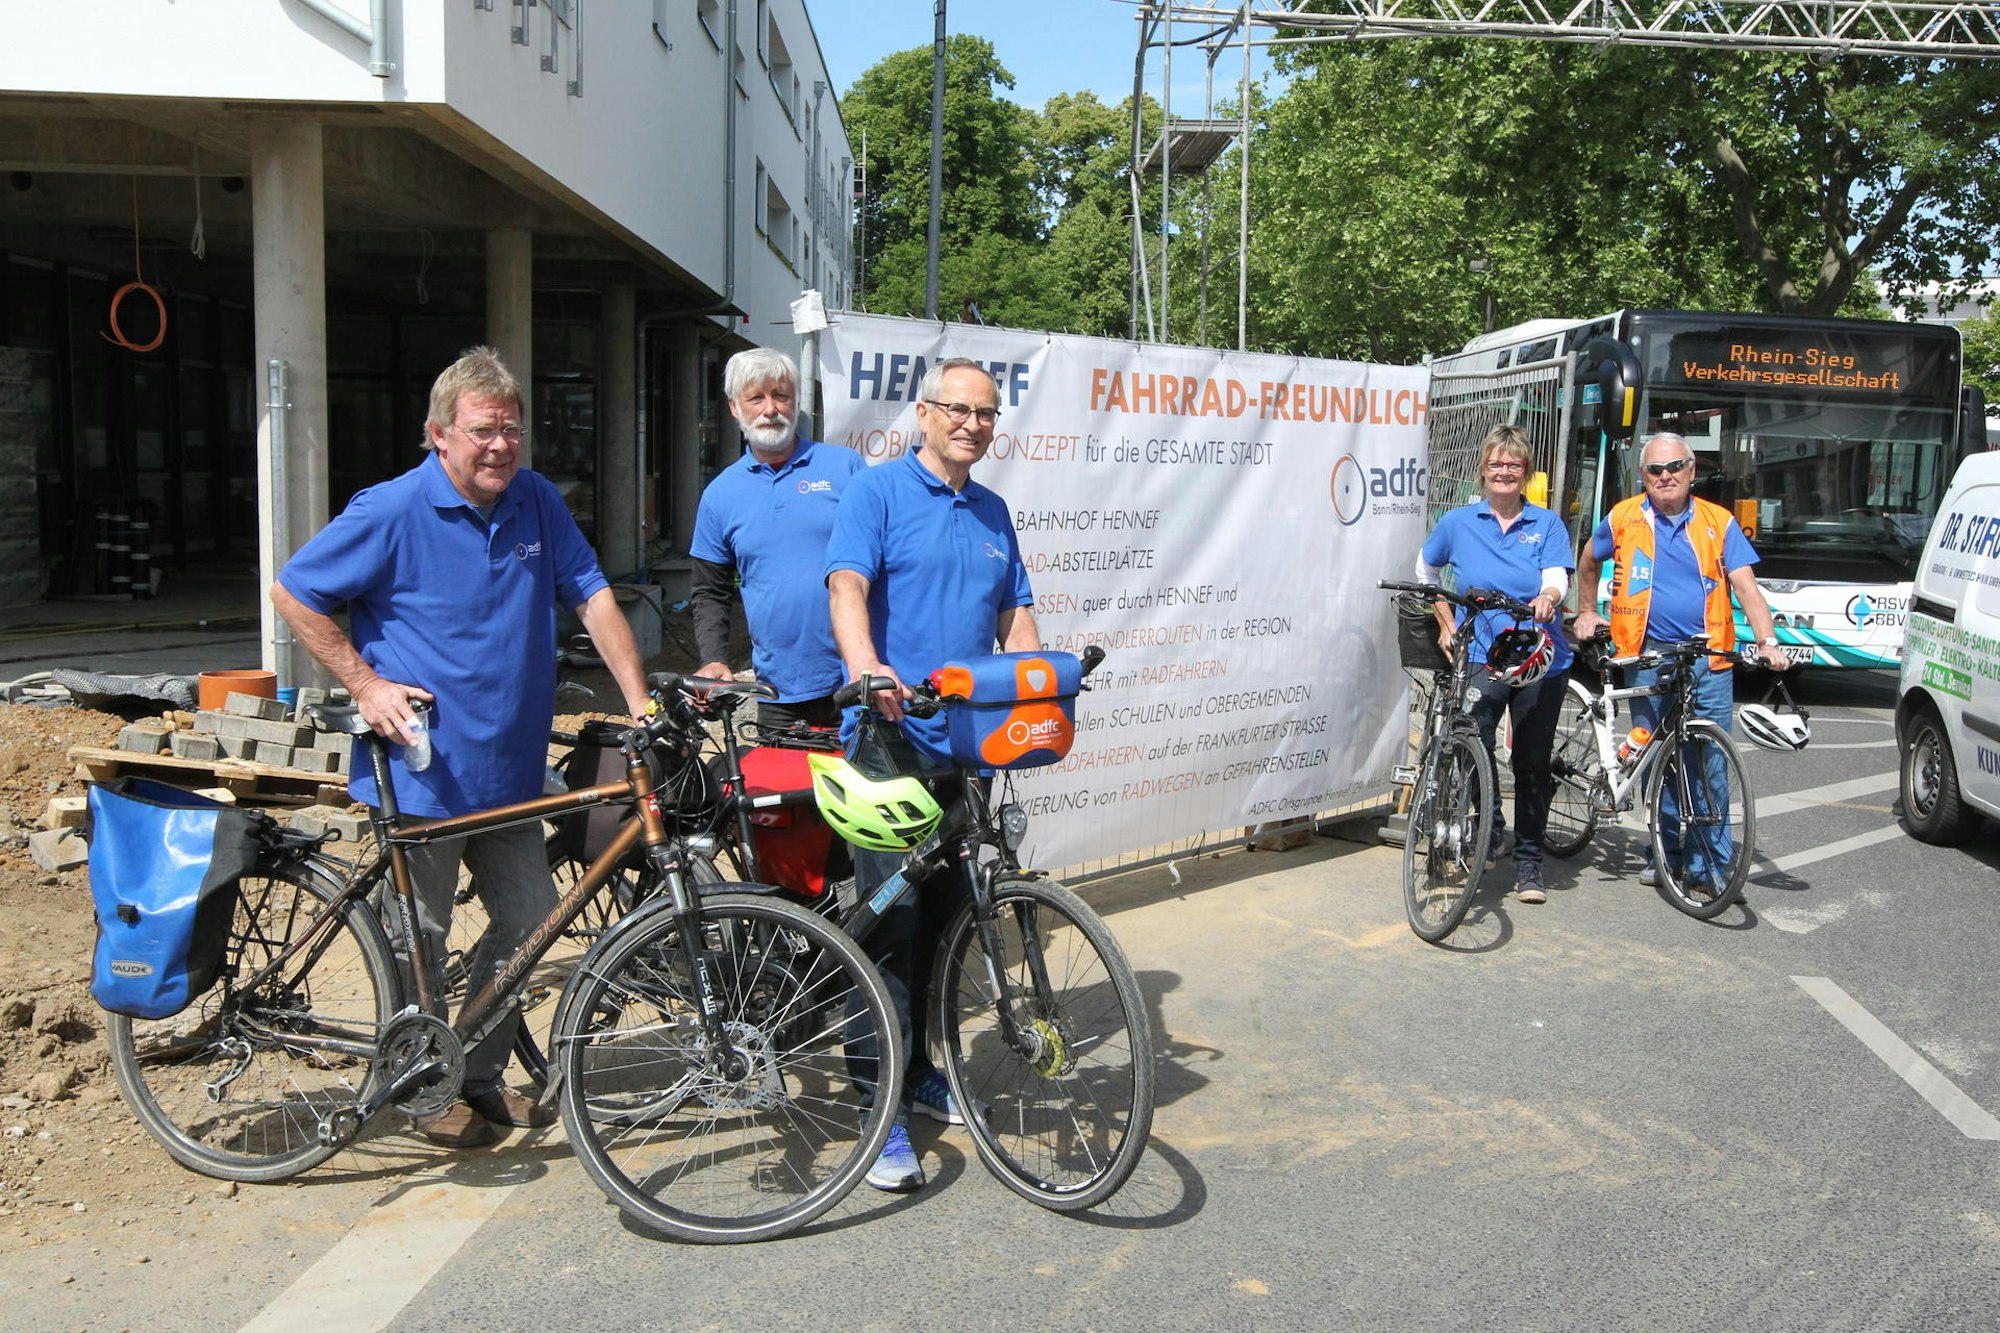 Die ADFC-Vertreter Horst Peters, Dietrich Lohmayer, Sigurd van Riesen, Brigitte Hildebrandt und Franz Böhm vor dem Banner.